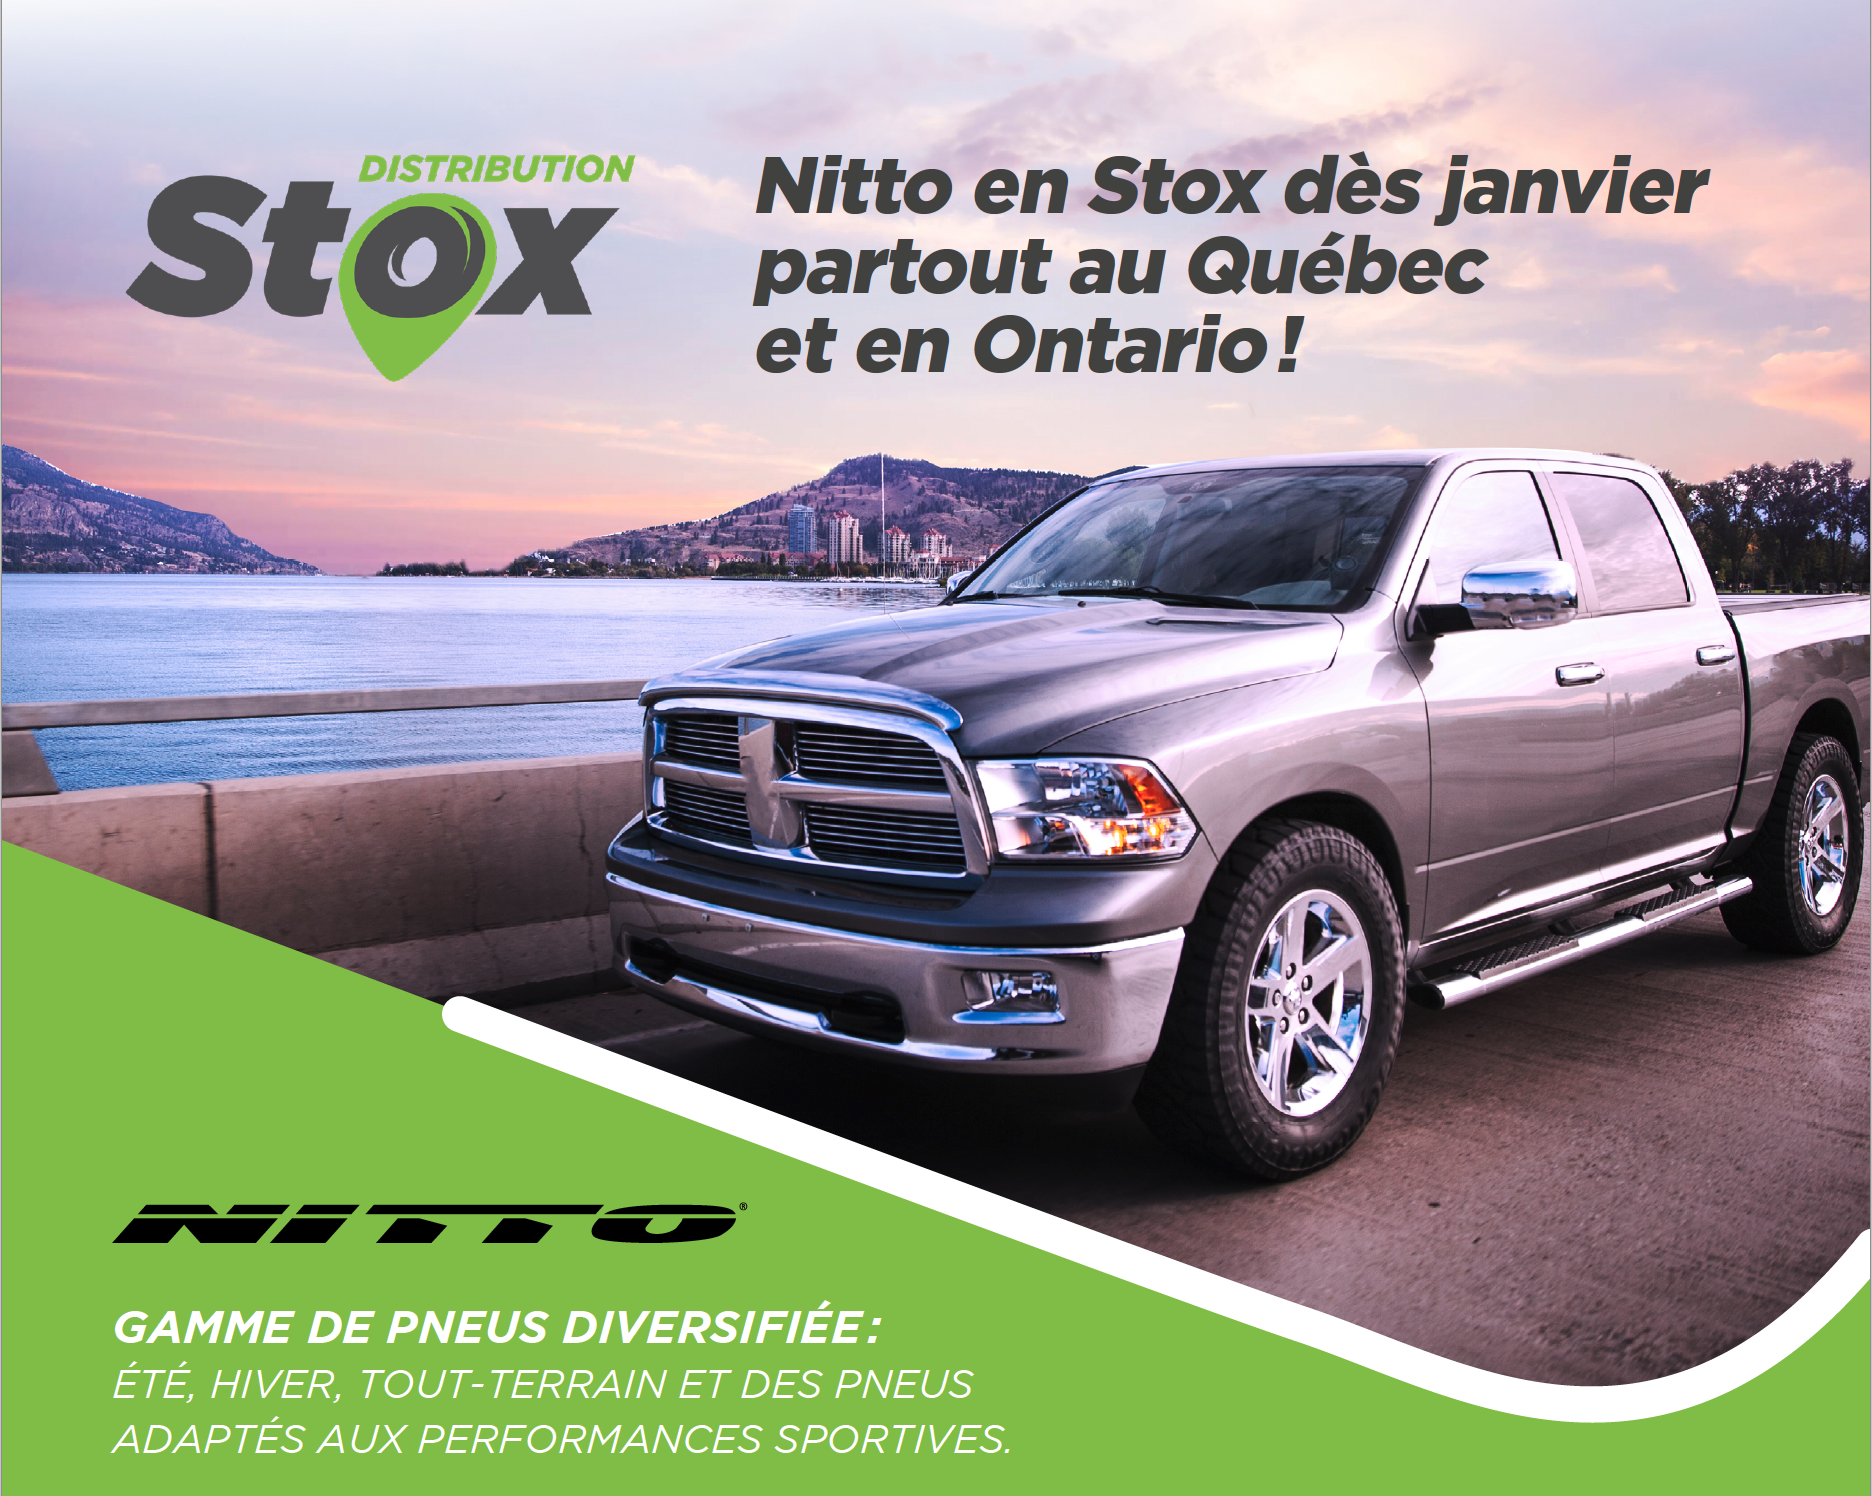 Nitto en Stox dès janvier partout au Québec et en Ontario !